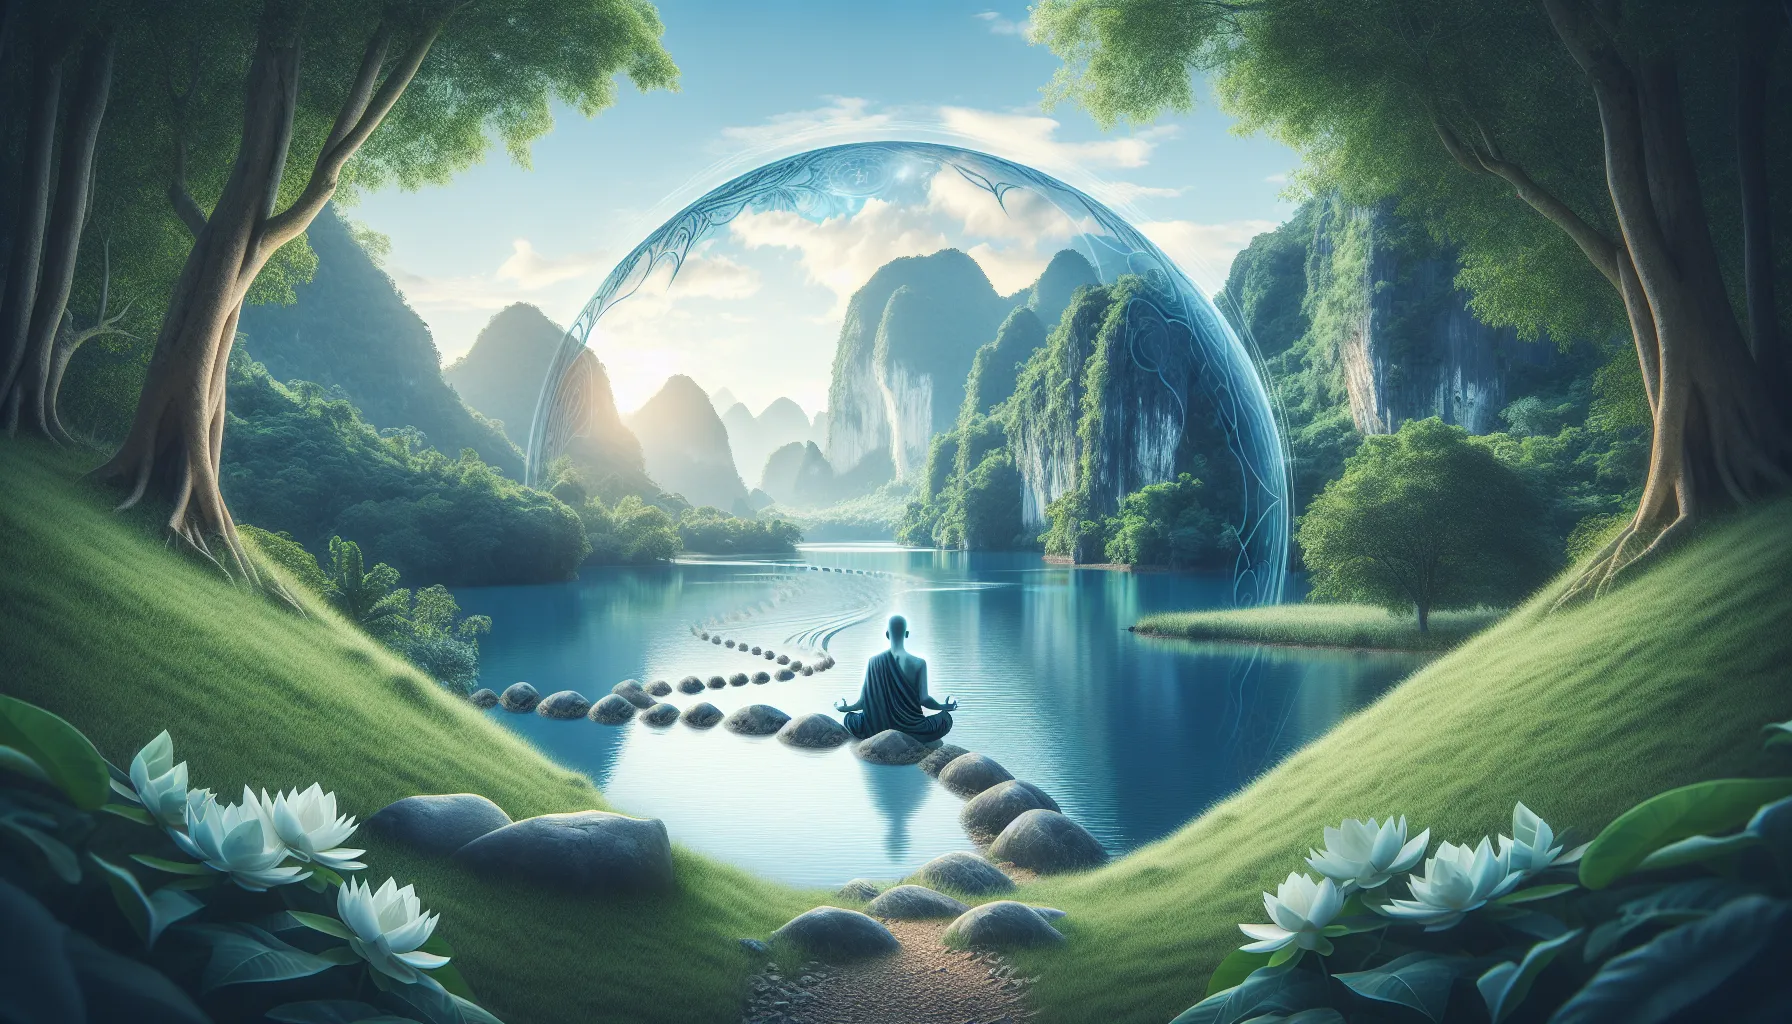 Imagen representando el concepto de Nirvana en el budismo